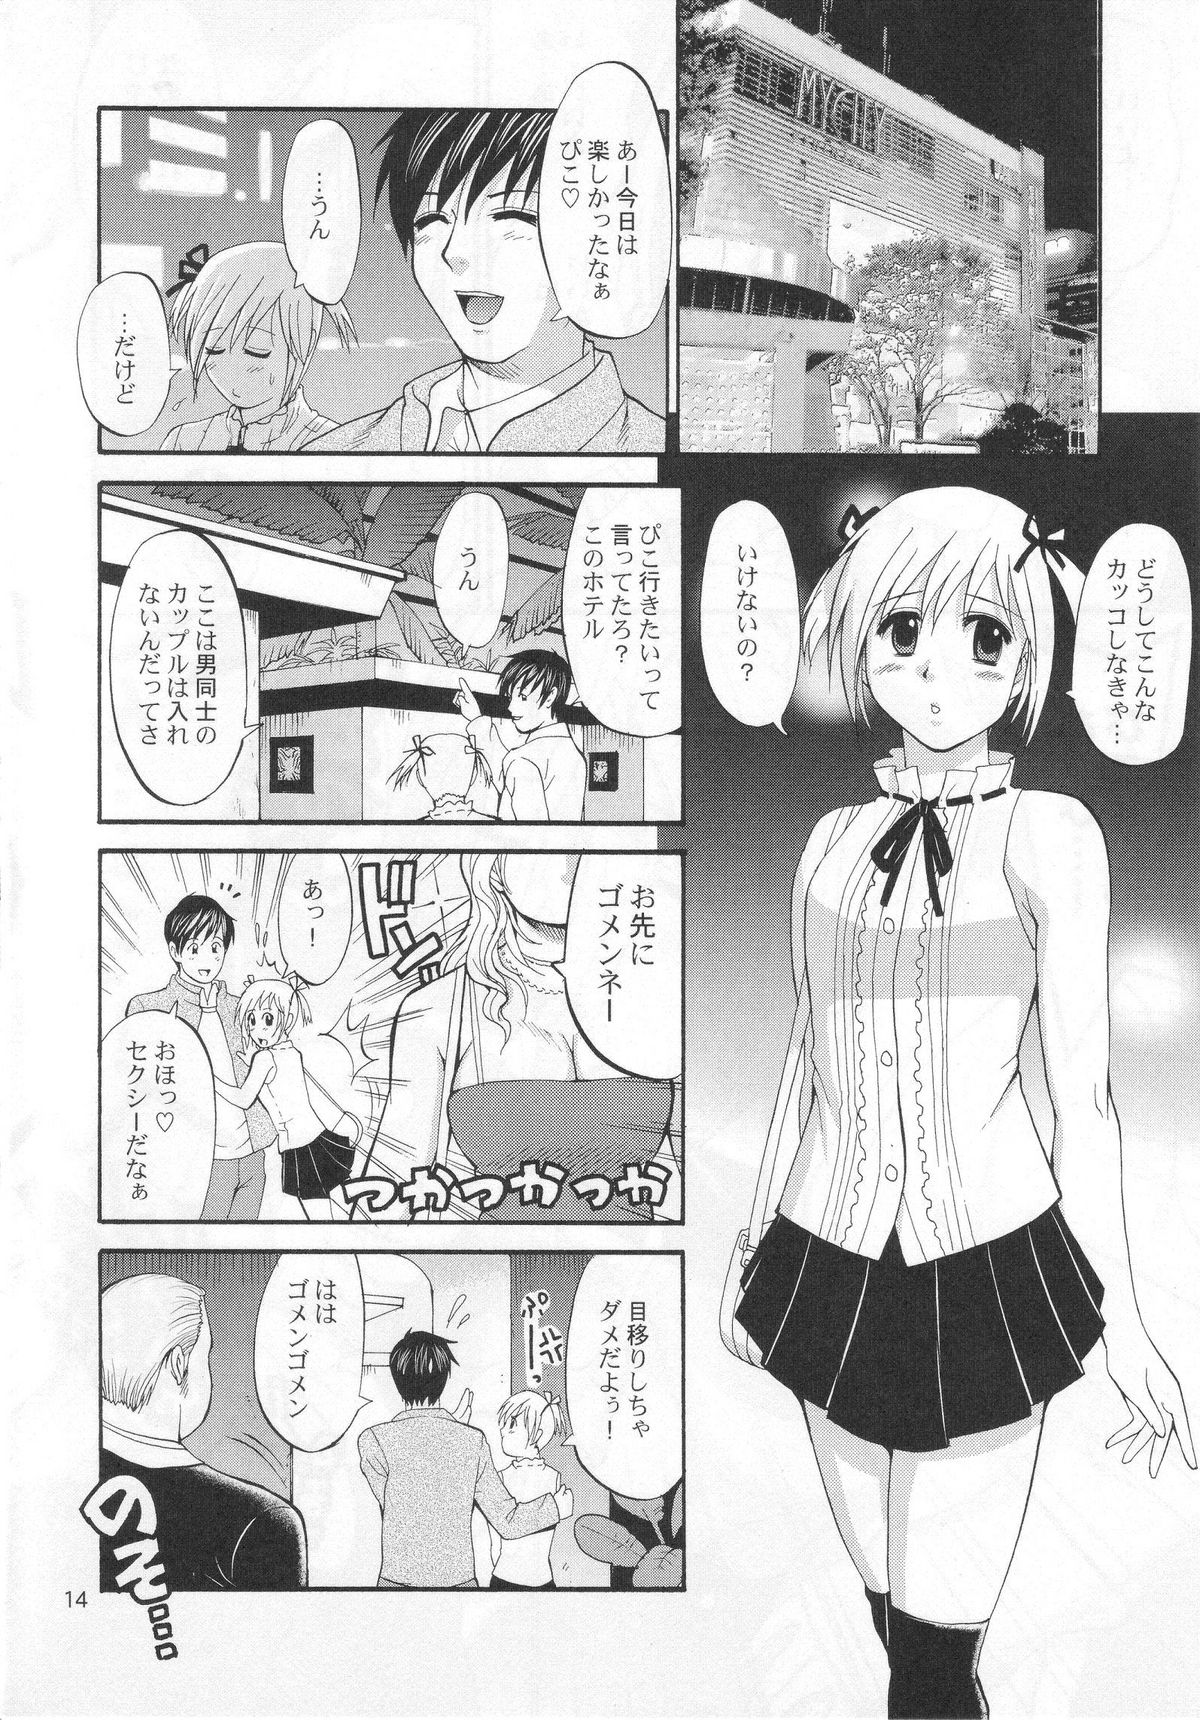 (COMIC1) [Saigado] Boku no Pico Comic + Koushiki Character Genanshuu (Boku no Pico) page 12 full